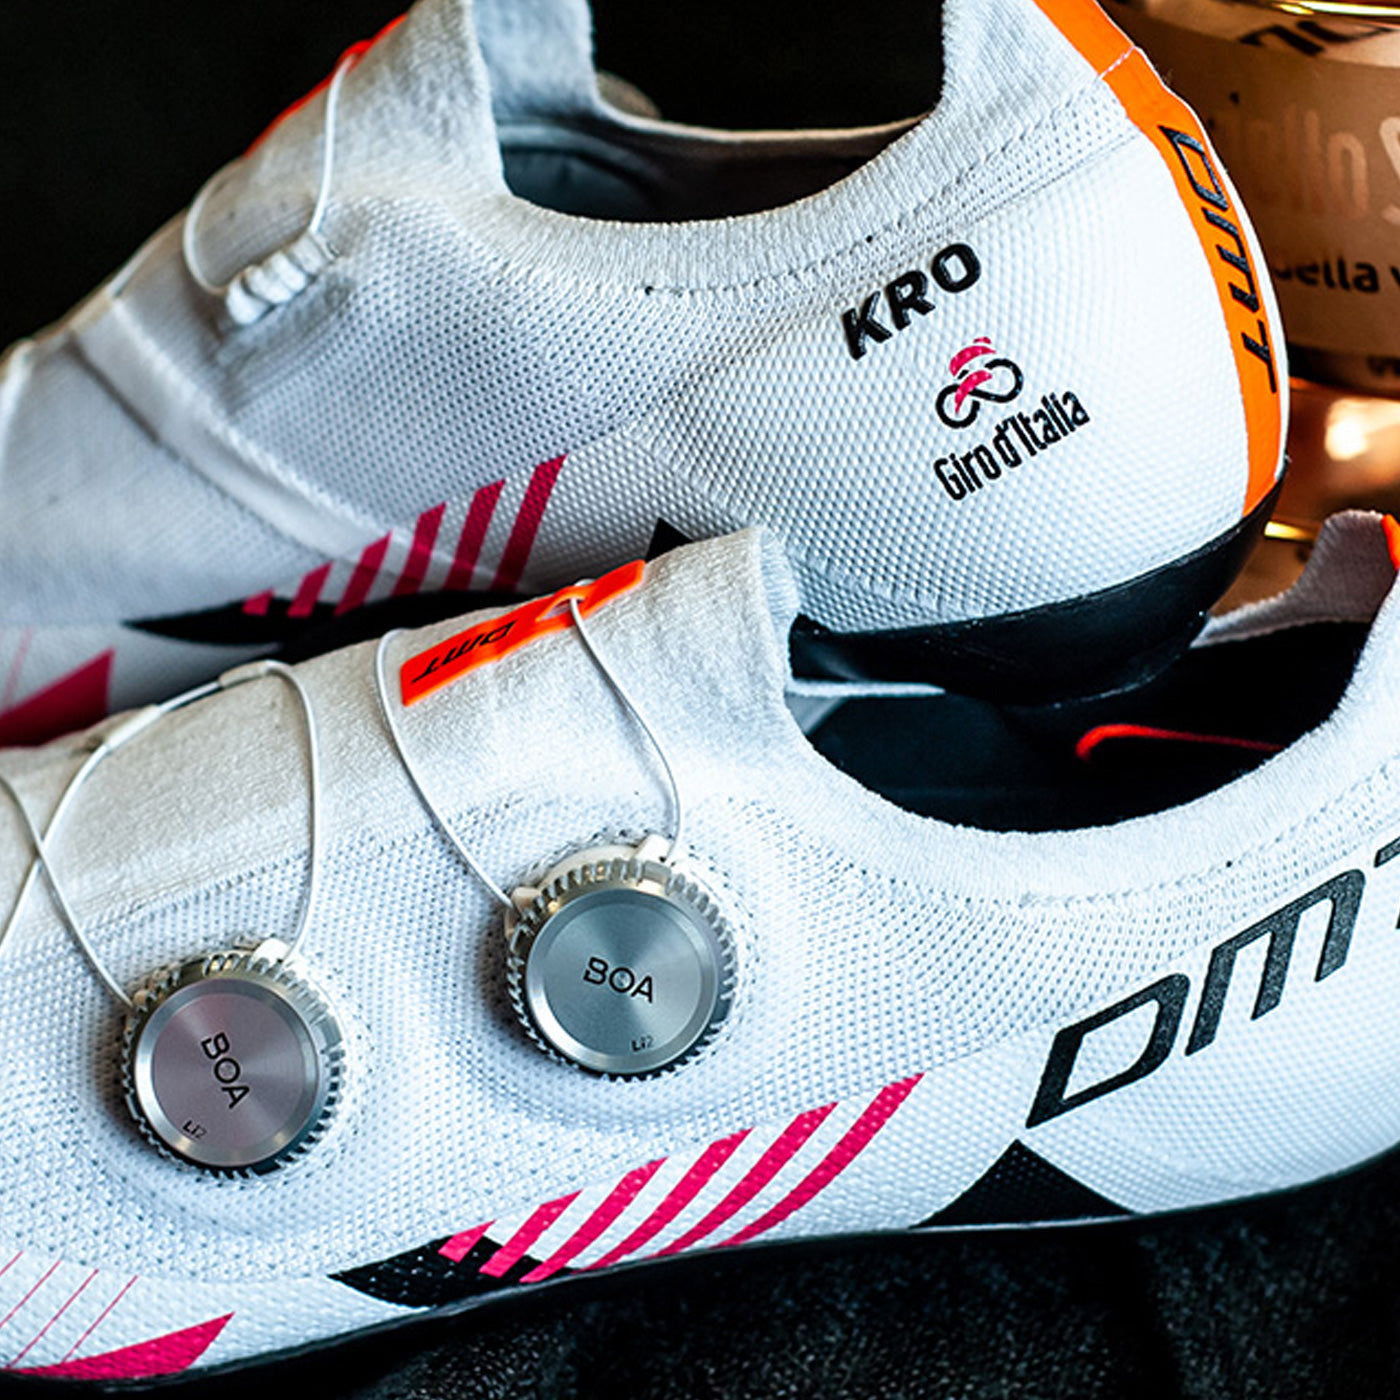 DMT KR0 shoes - Giro d'Italia